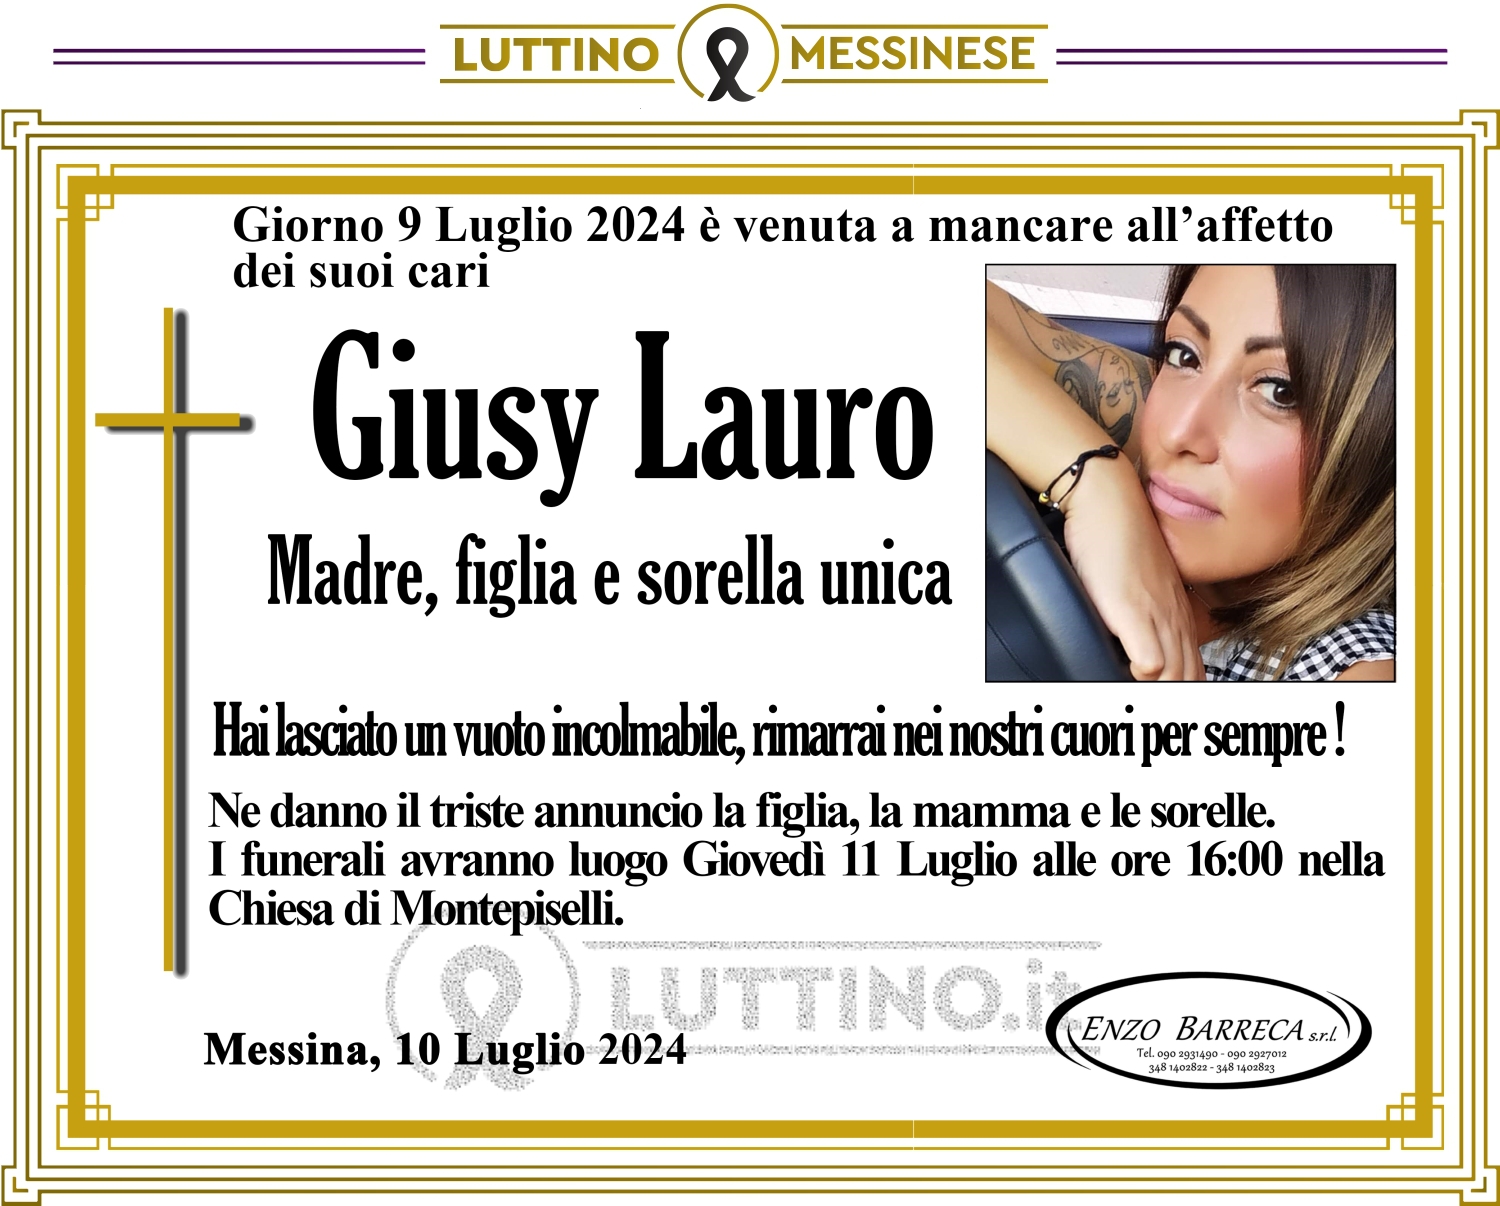 Giusy Lauro